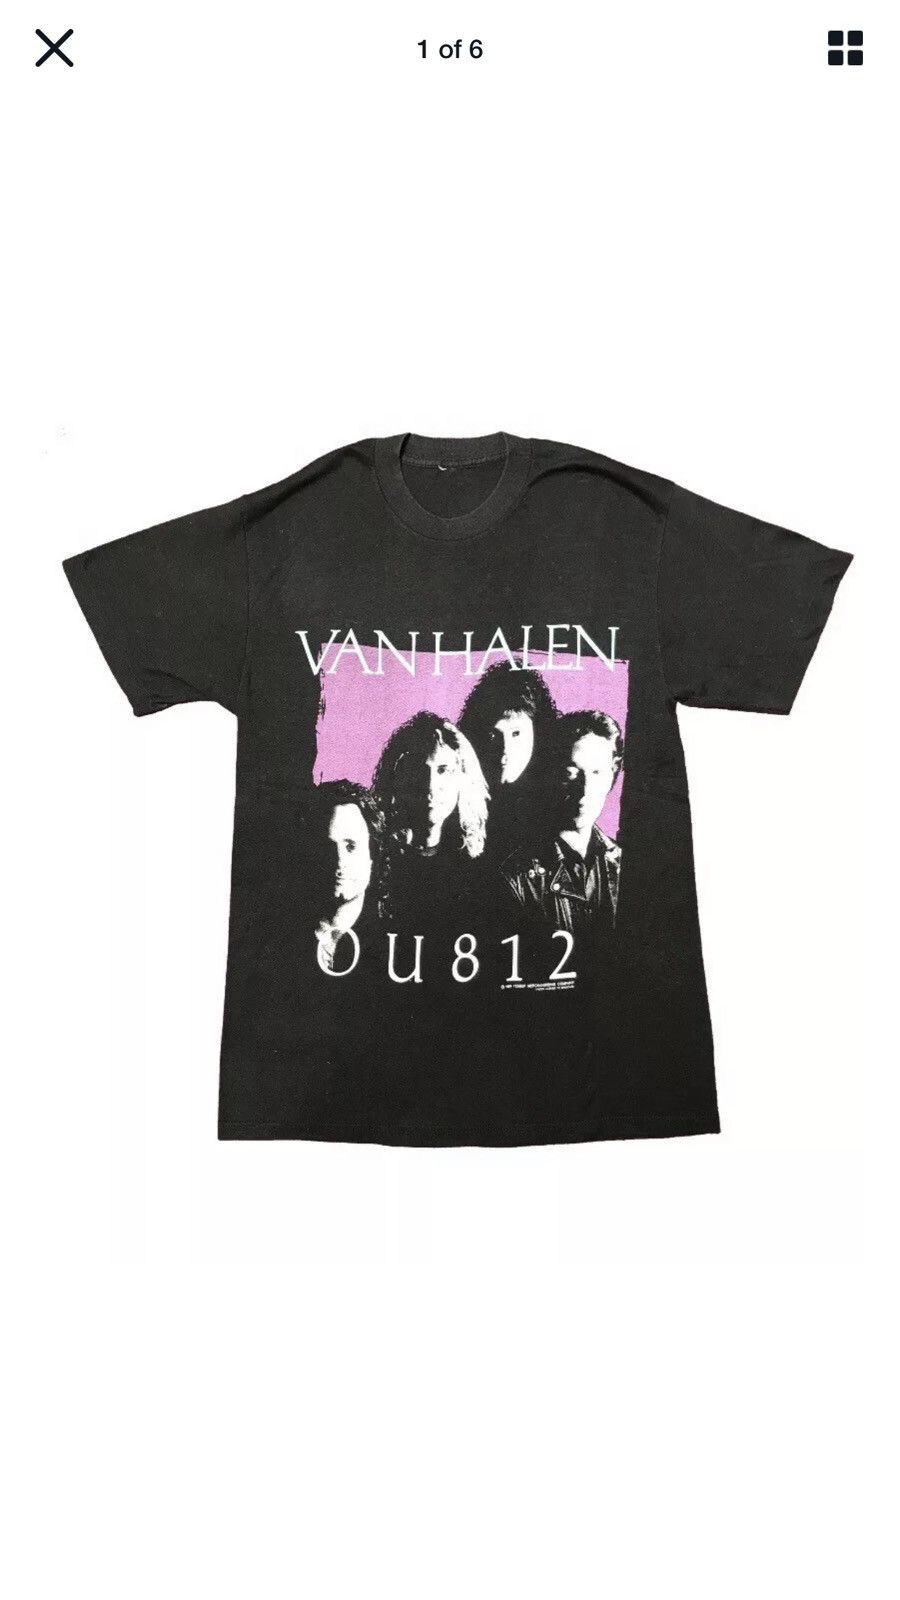 Vintage Van Halen OU812 Tour T Shirt 1989 Size Small Size US S / EU 44-46 / 1 - 1 Preview